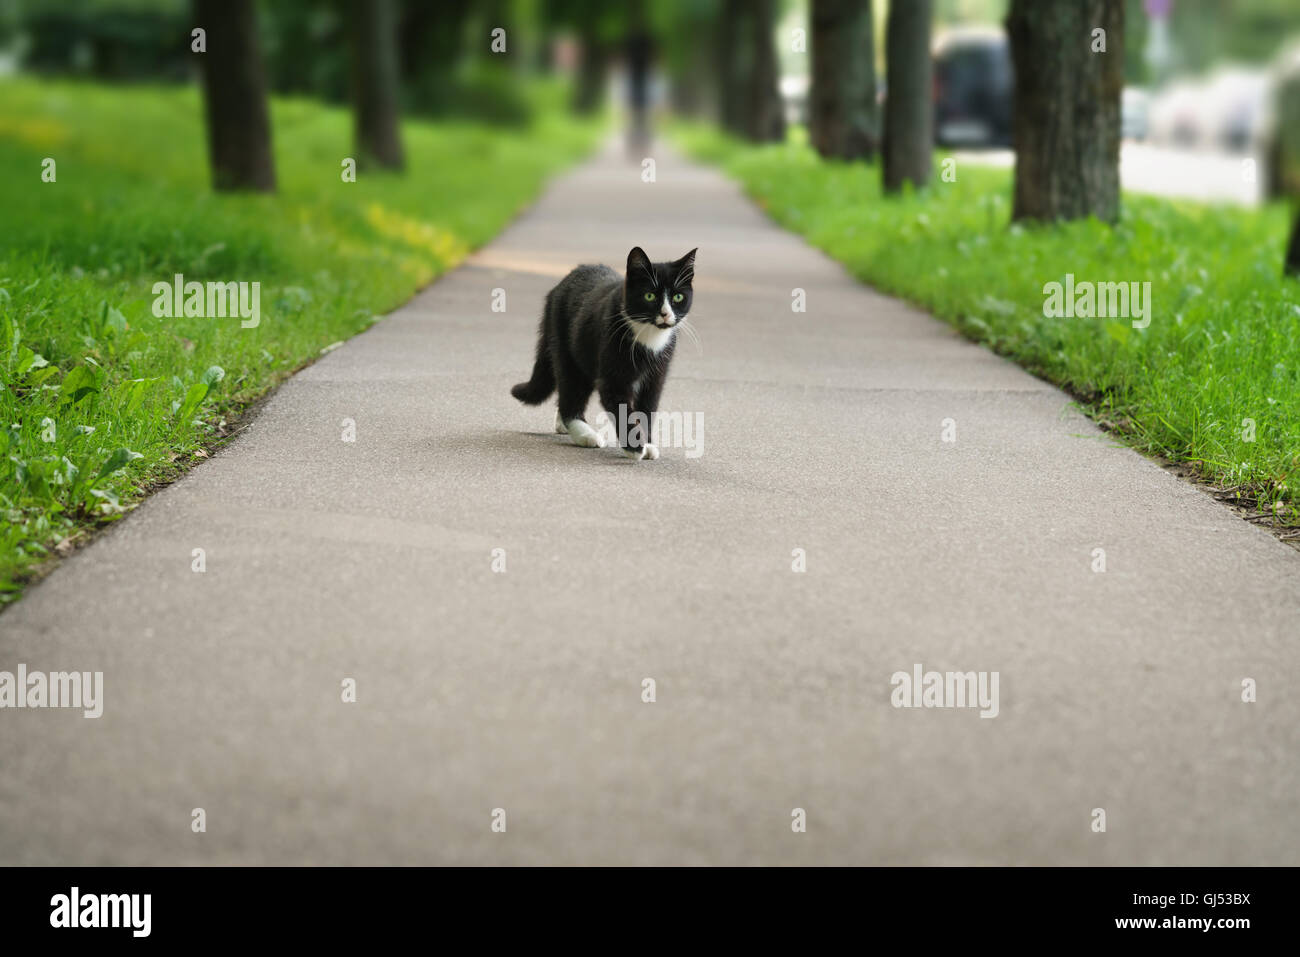 homeless black and white cat on asphalt Stock Photo